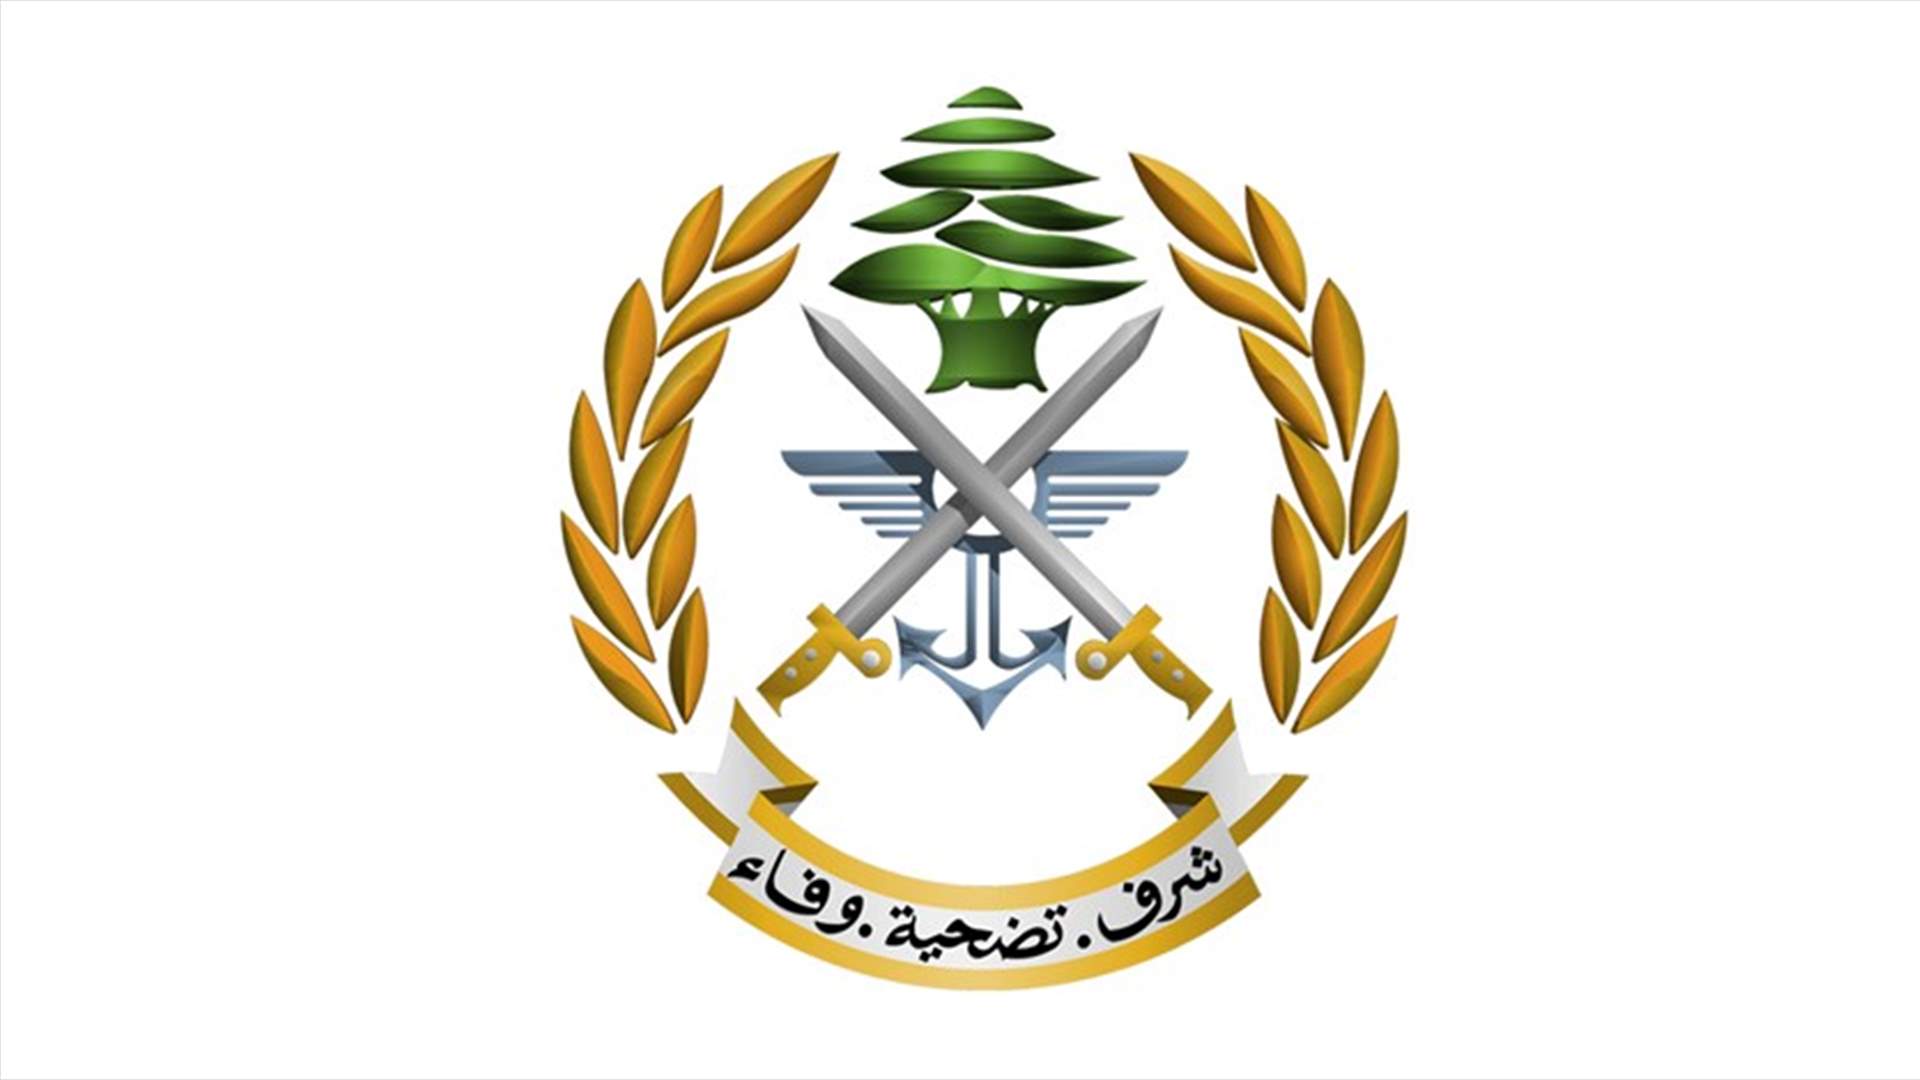 الجيش تسلم الدفعة الرابعة من الهبة المالية القطرية وبدأ توزيعها بالتساوي على العسكريين